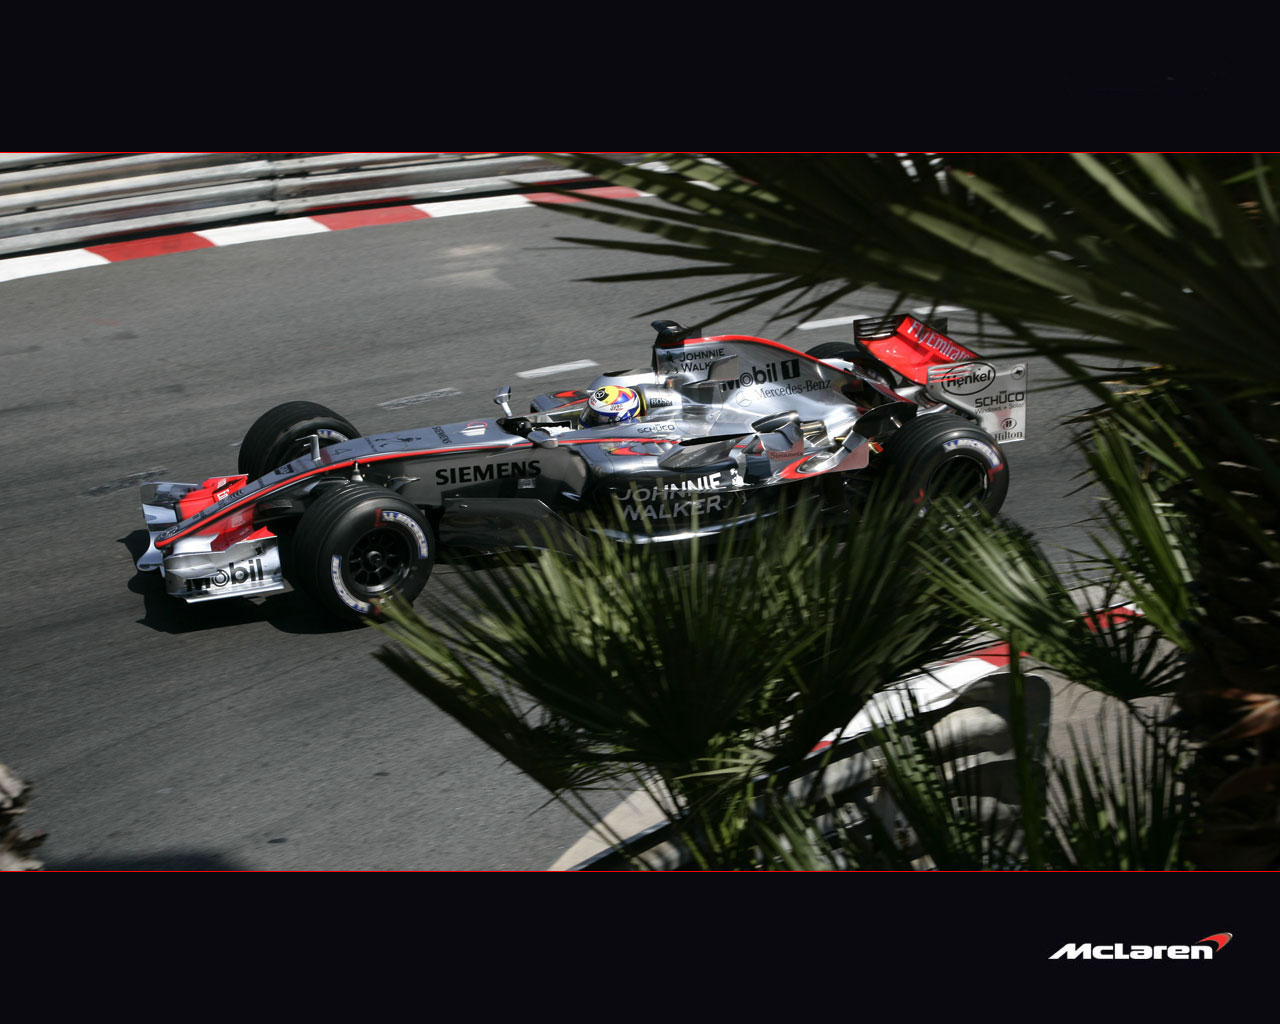 Fond d'ecran McLaren F1